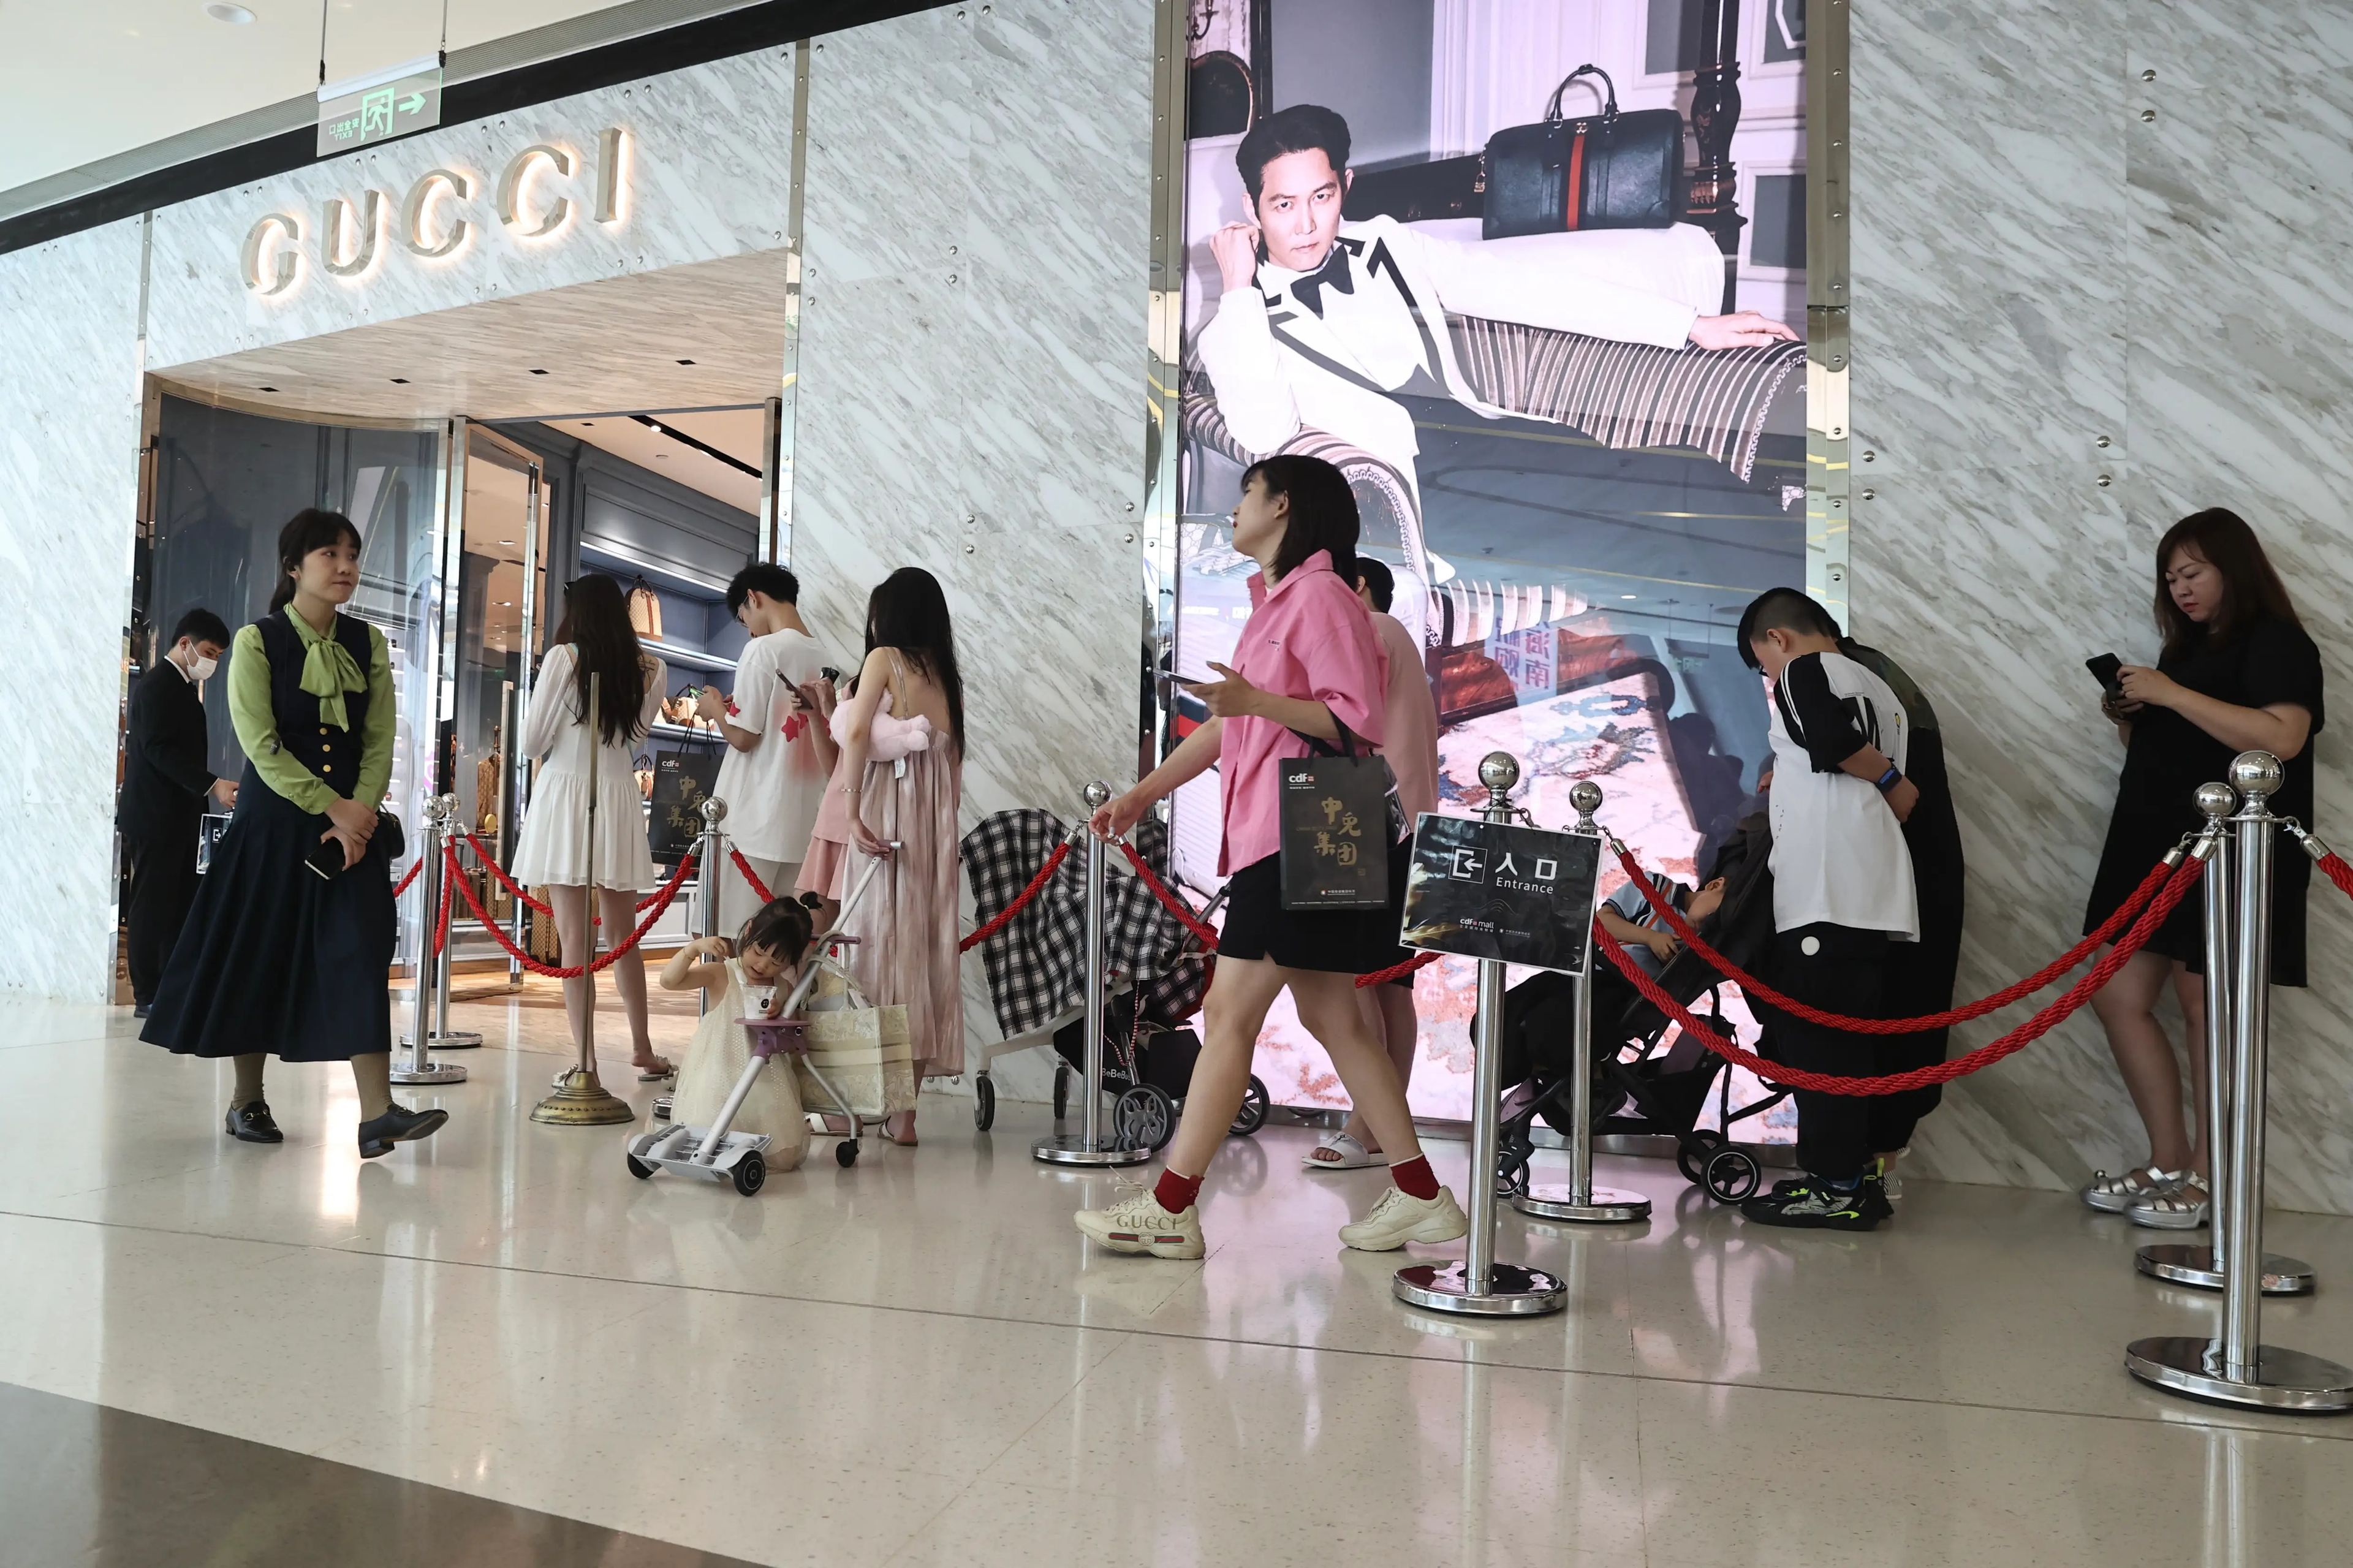 El crecimiento de Gucci se ha basado en gran medida en China, pero sus tiendas (incluida esta de la provincia china de Hainan) han sufrido recientemente.